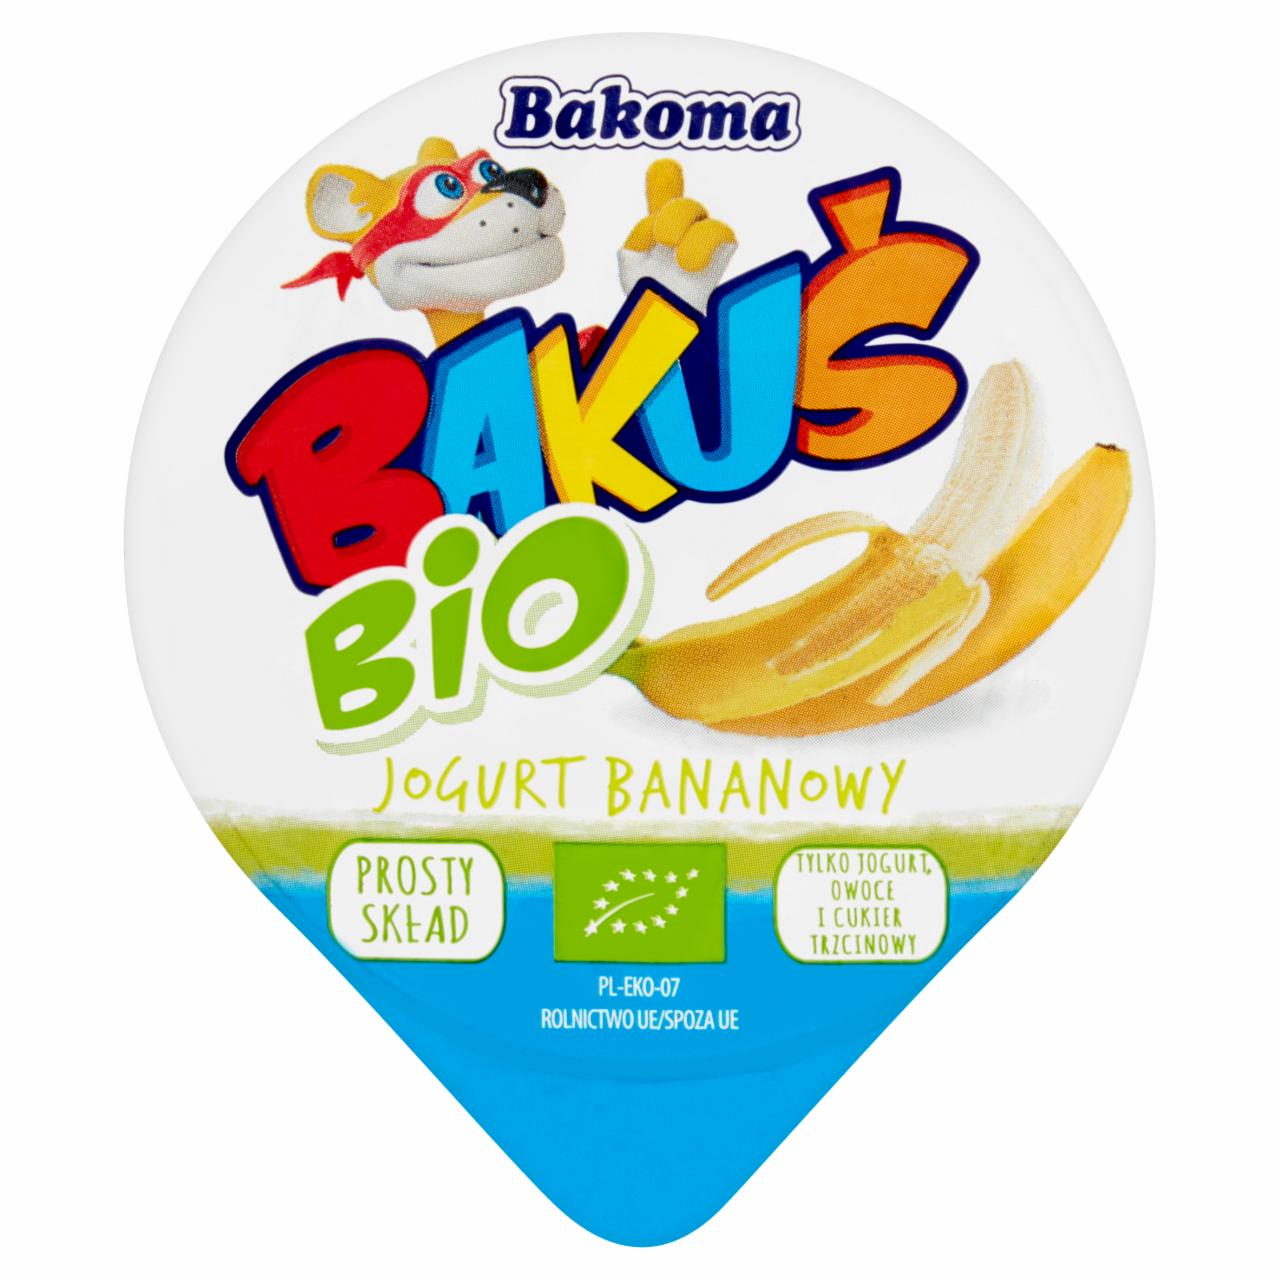 Zdjęcia - Bakoma Bakuś BIO Jogurt bananowy 100 g